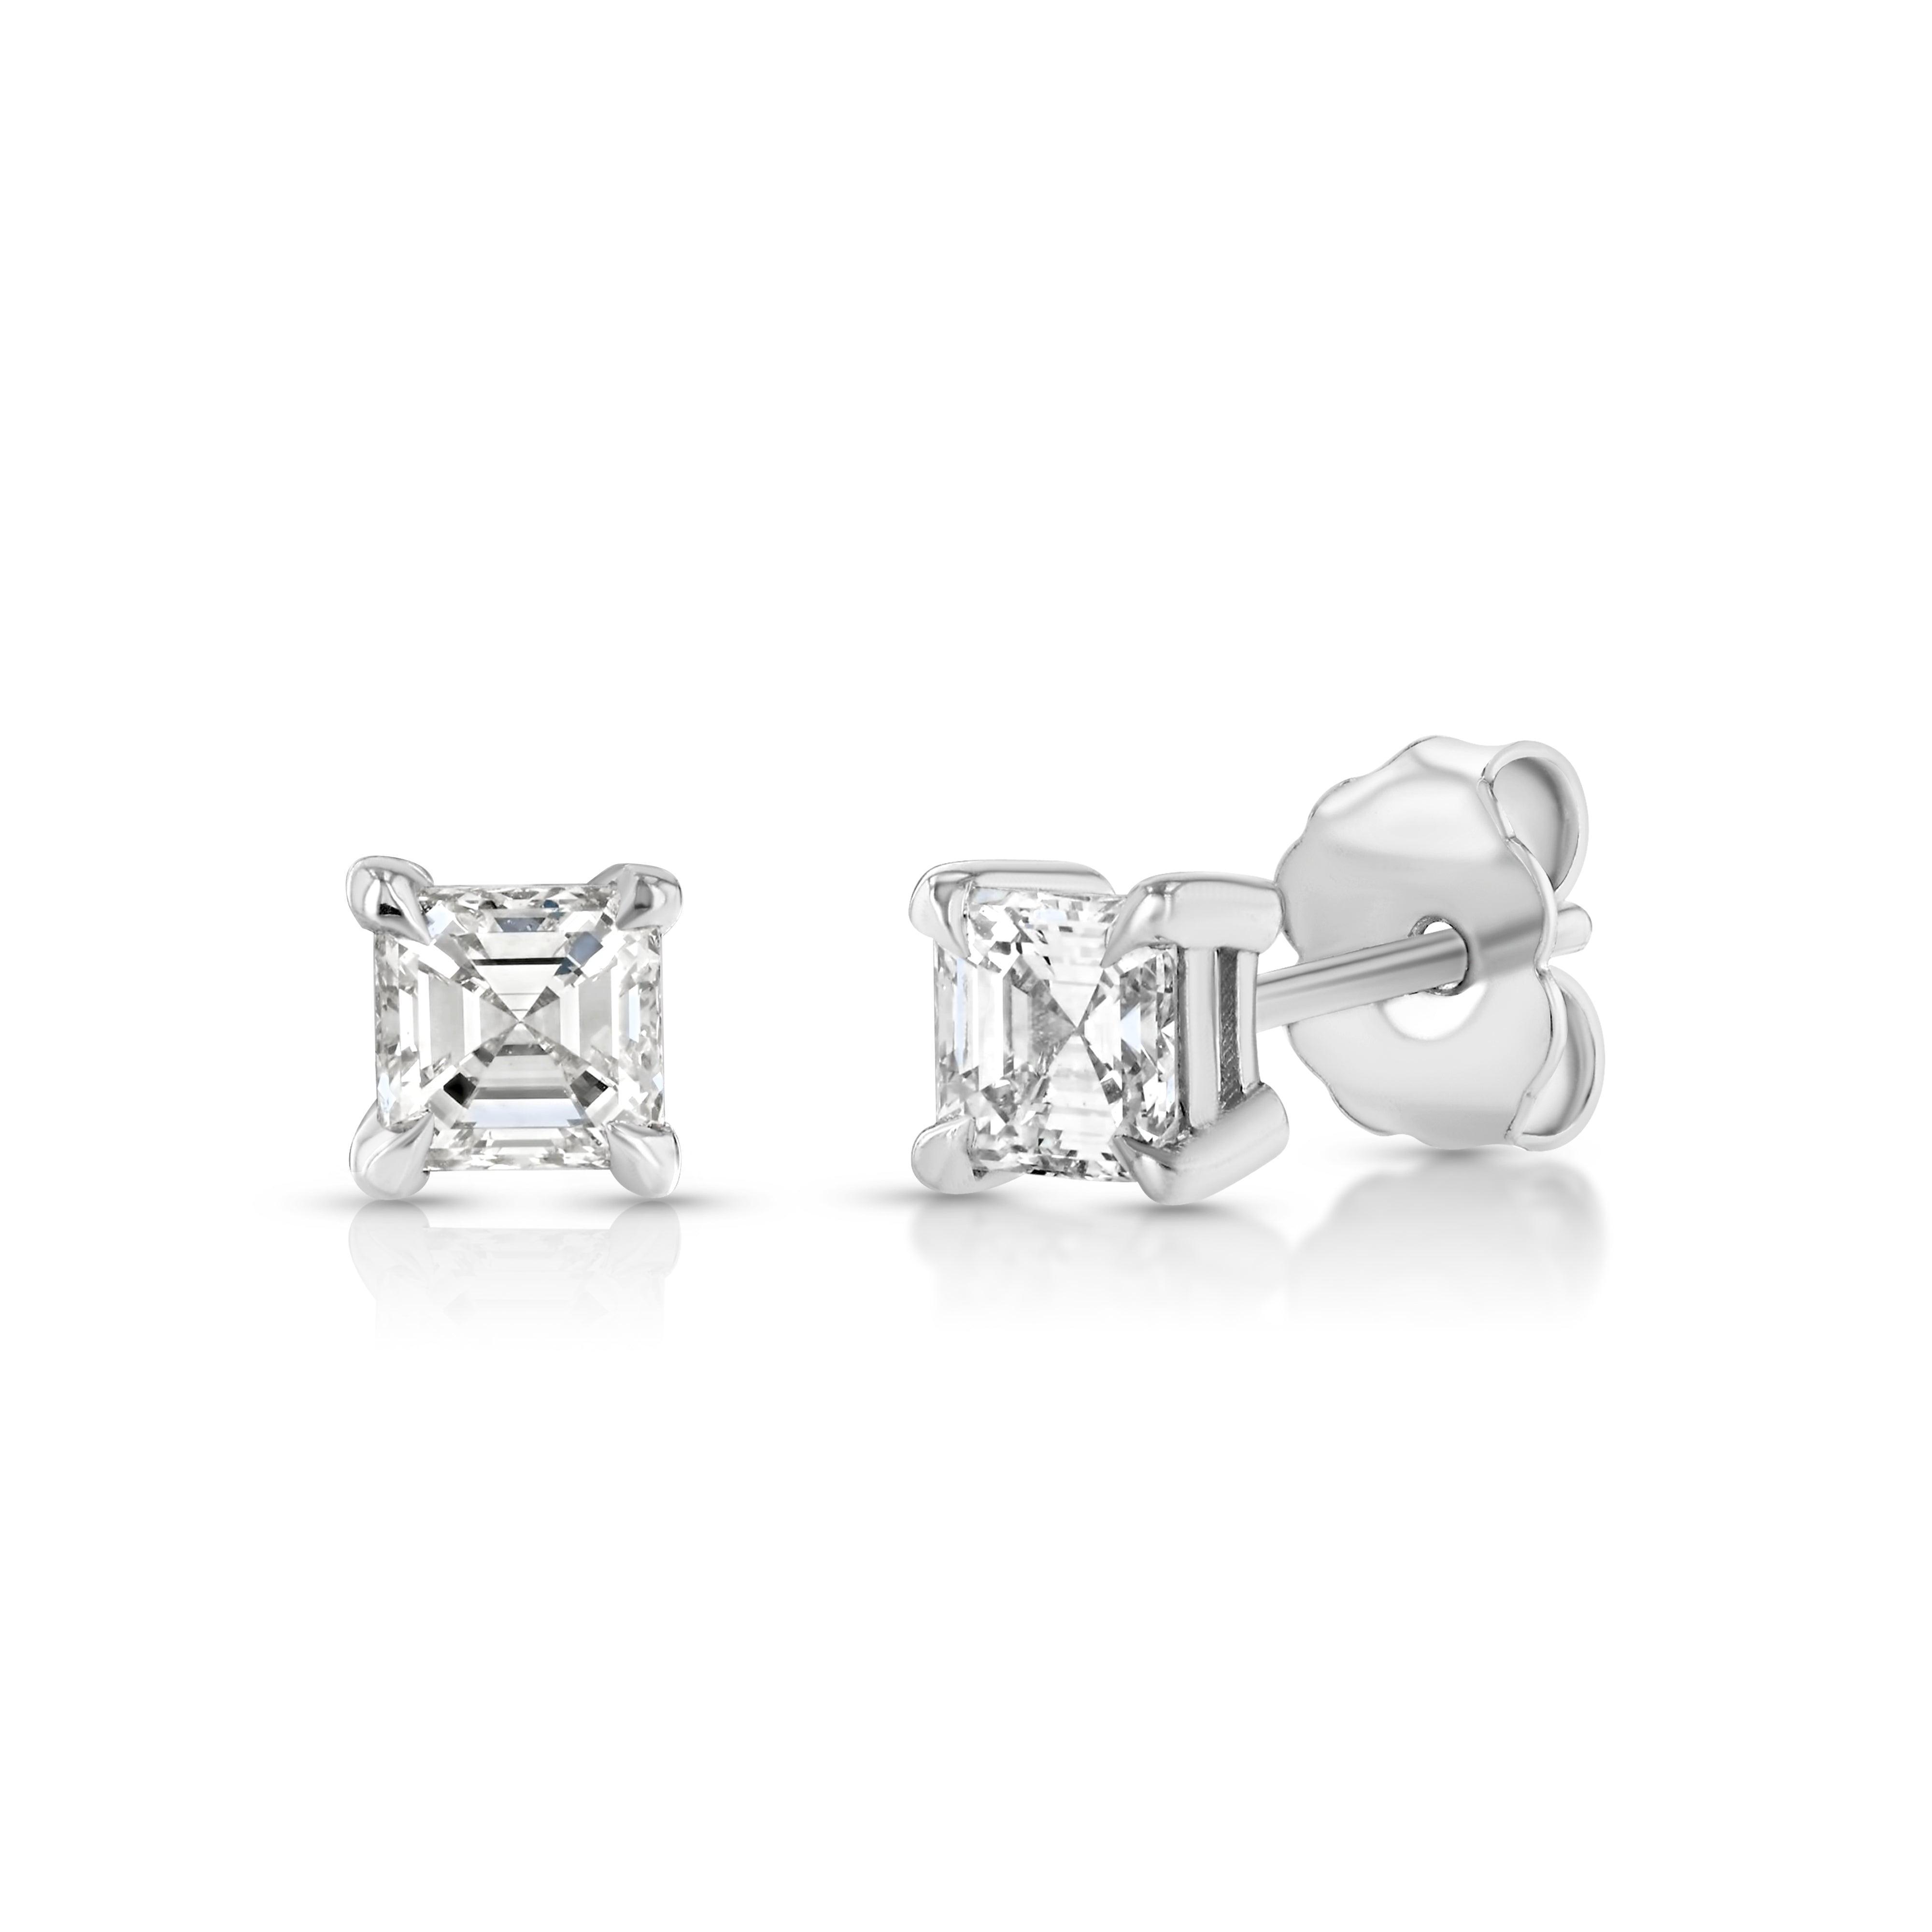 Buy Gold & Diamond Earrings Online For Women | Kisna